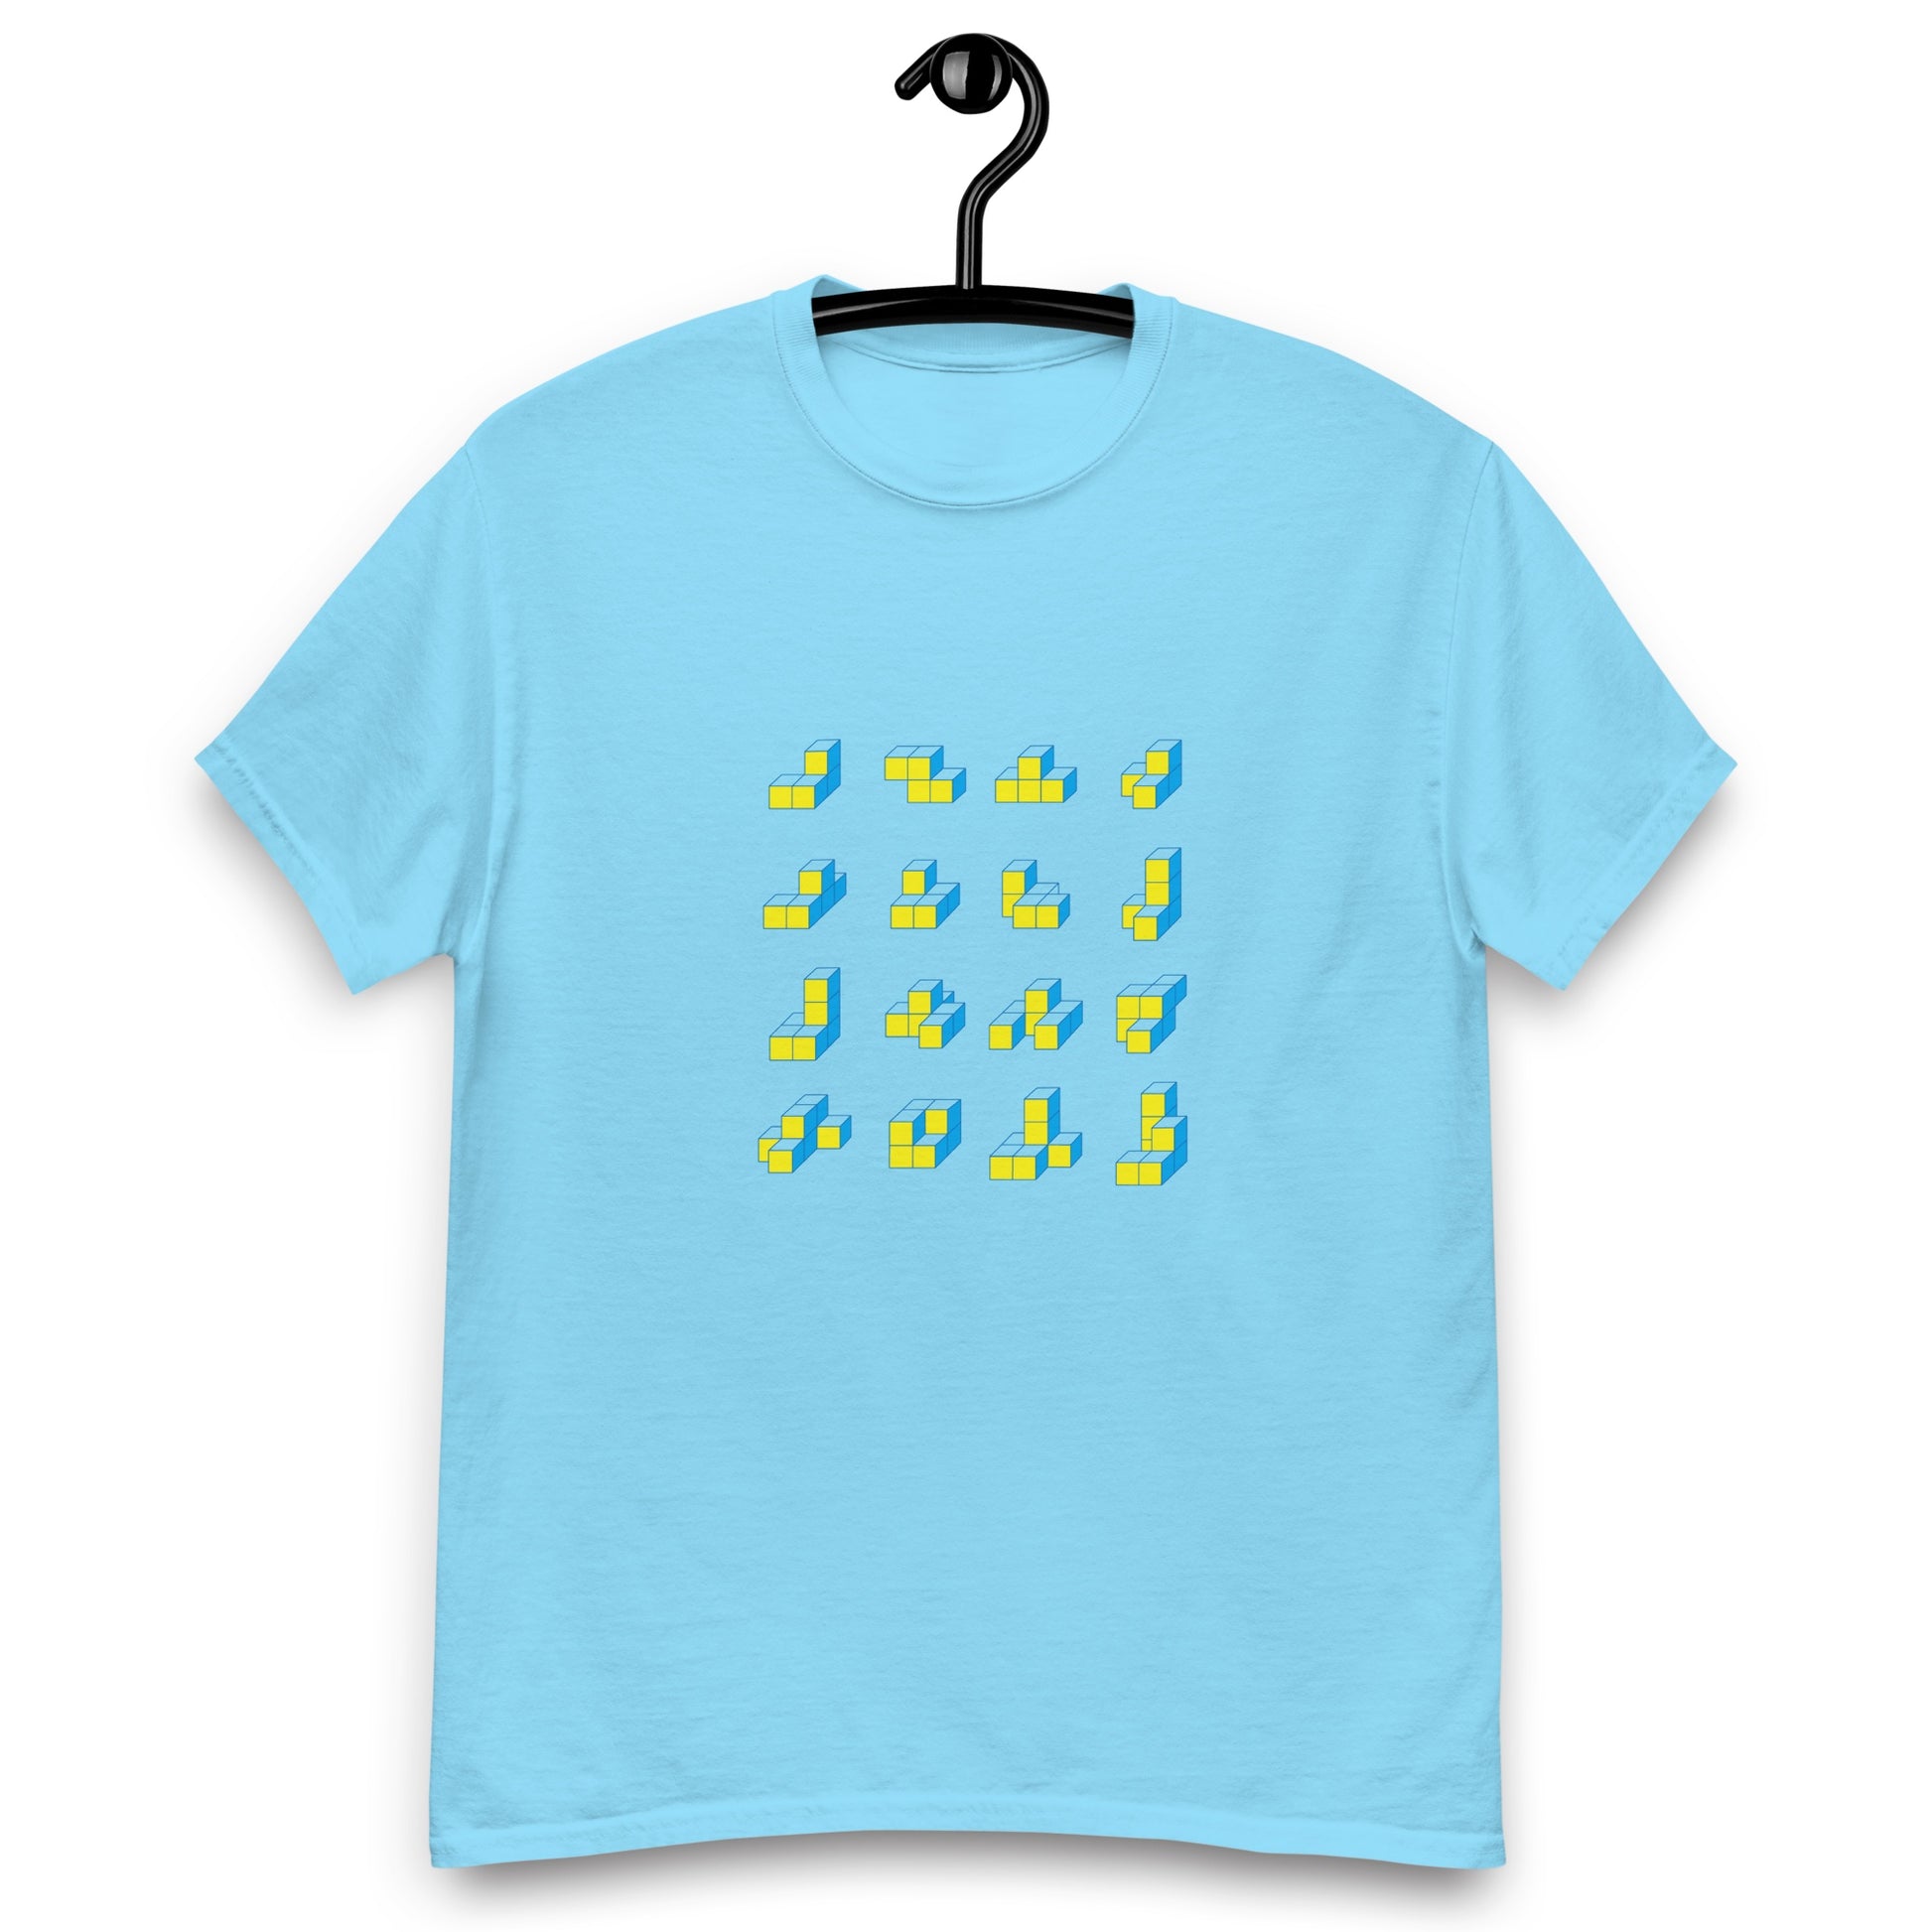 キューブ 黄×青 クラシックTシャツ [ライトカラー] スカイブルー S 01